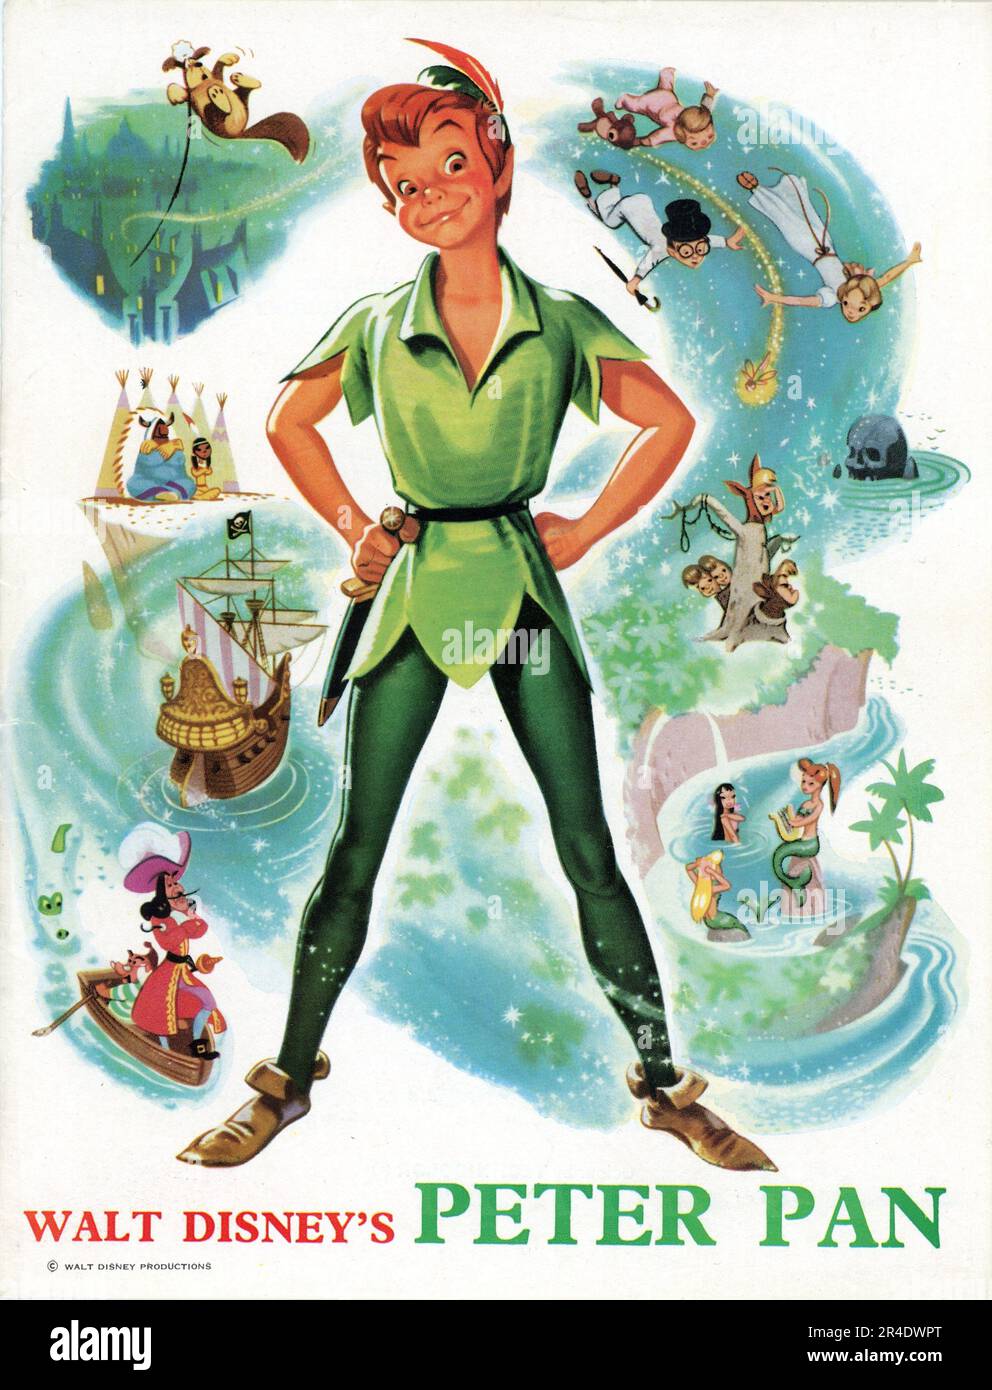 BOBBY DRISCOLL als Stimme von Peter Pan in WALT DISNEY's PETER PAN 1953 Regisseure Clyde Geronimi Wilfred Jackson und Hamilton Luske eine Adaption des Stücks von James M. Barrie In einer Walt Disney Produktion Stockfoto